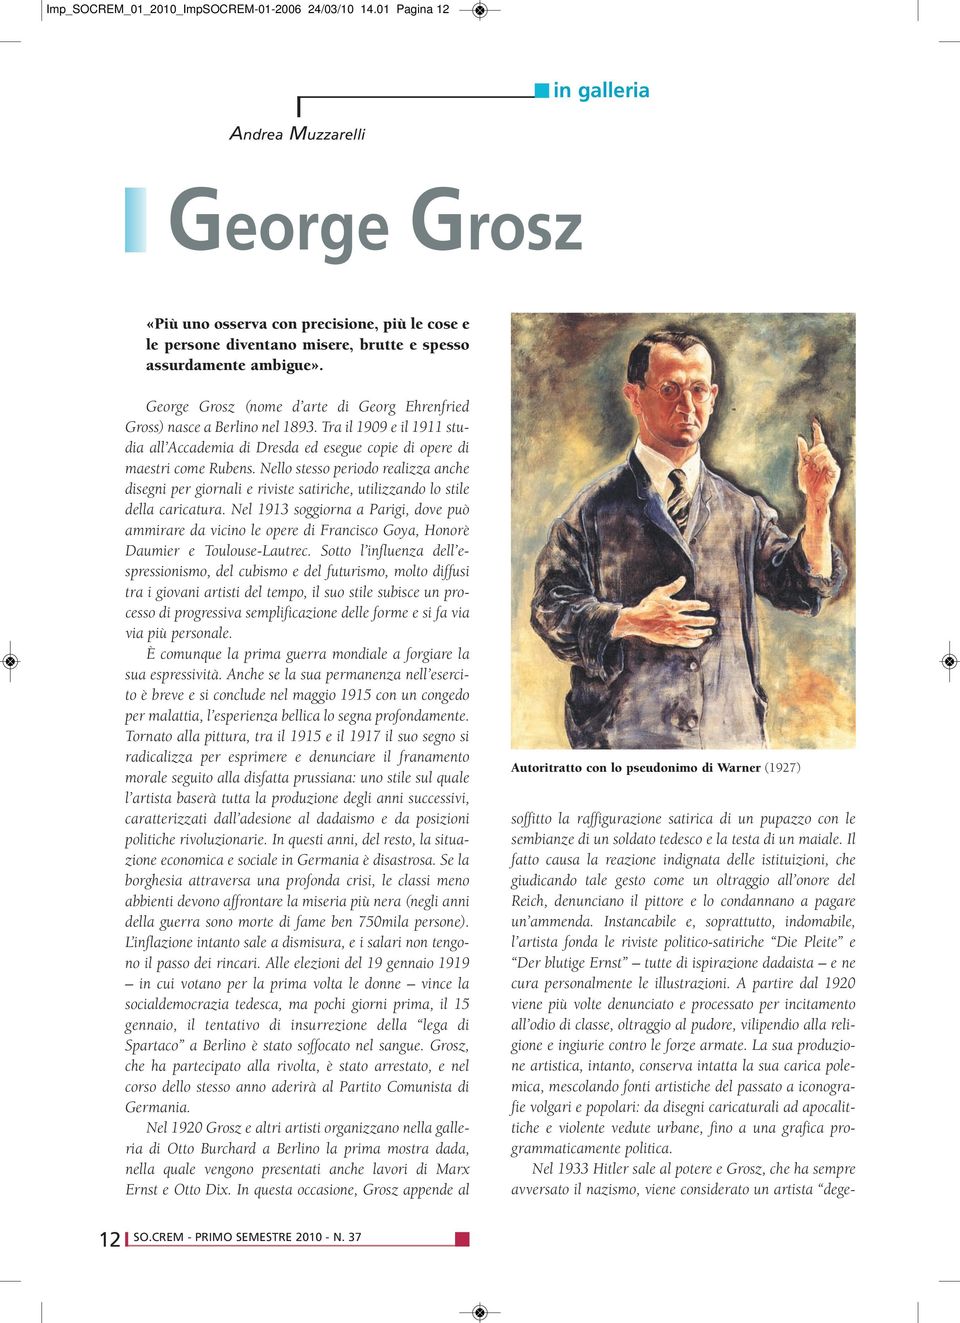 George Grosz (nome d arte di Georg Ehrenfried Gross) nasce a Berlino nel 1893. Tra il 1909 e il 1911 studia all Accademia di Dresda ed esegue copie di opere di maestri come Rubens.